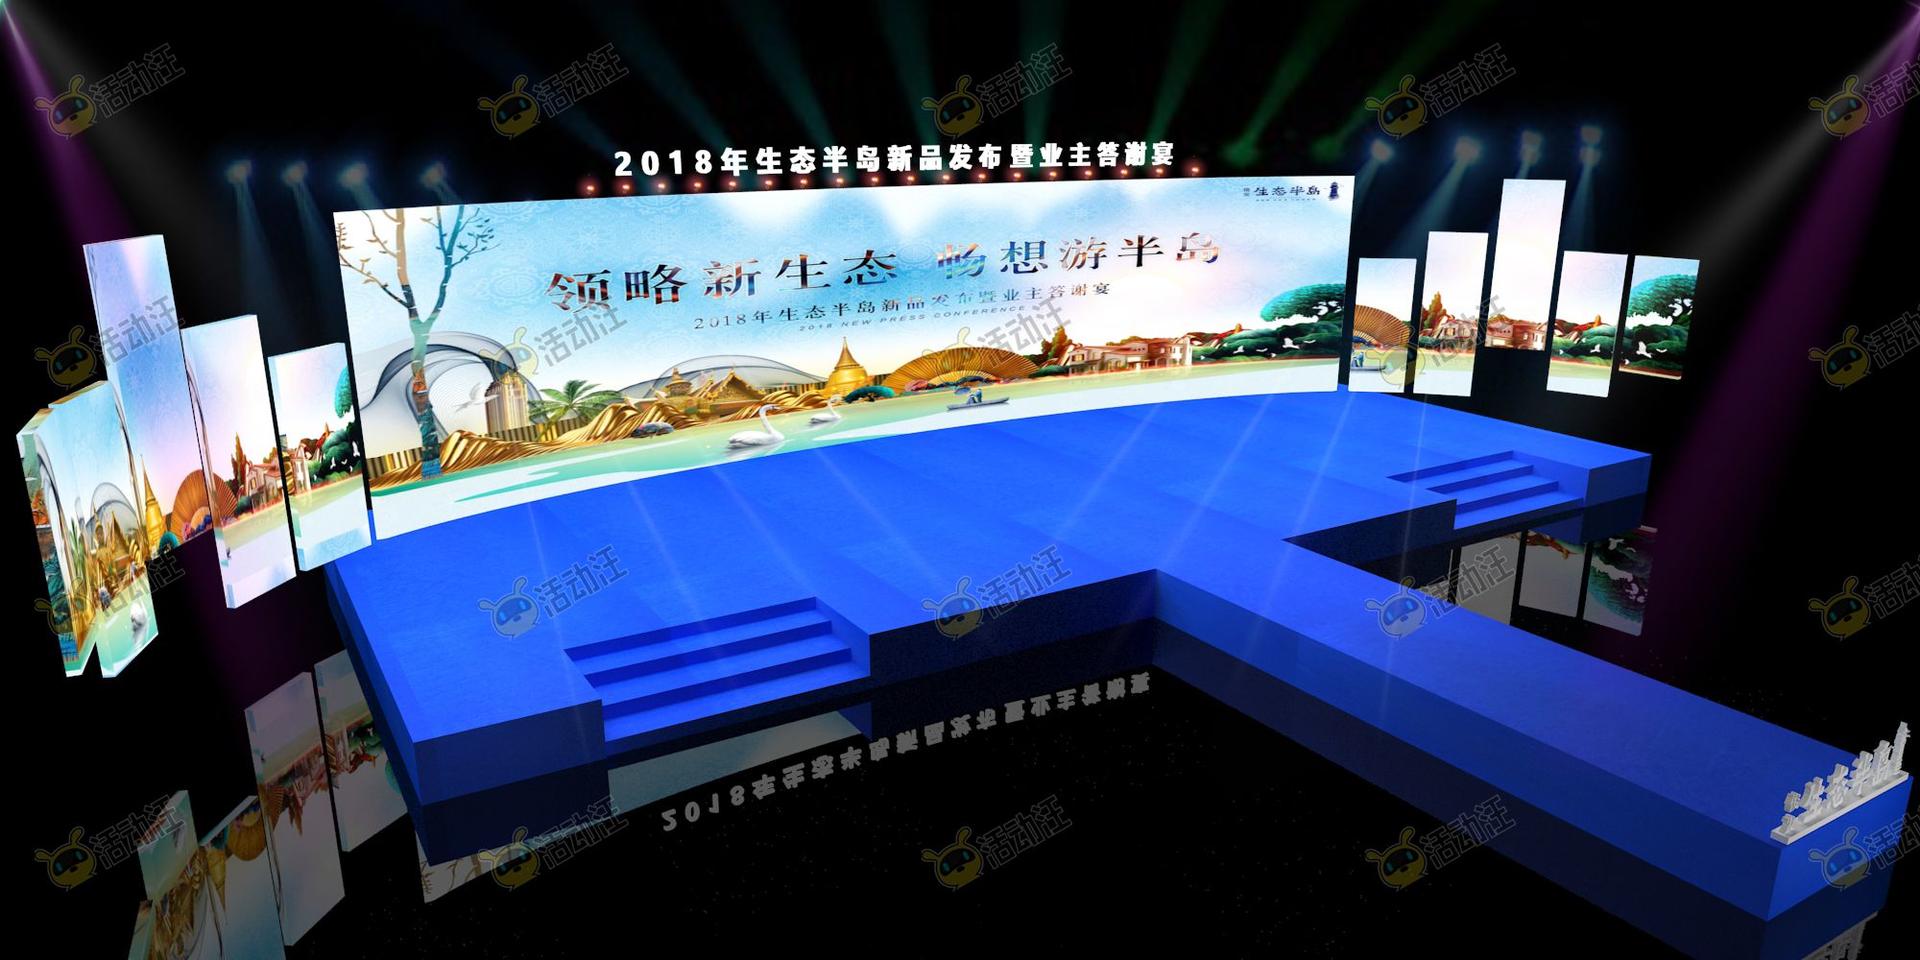 发布会活动舞台舞美3d效果图